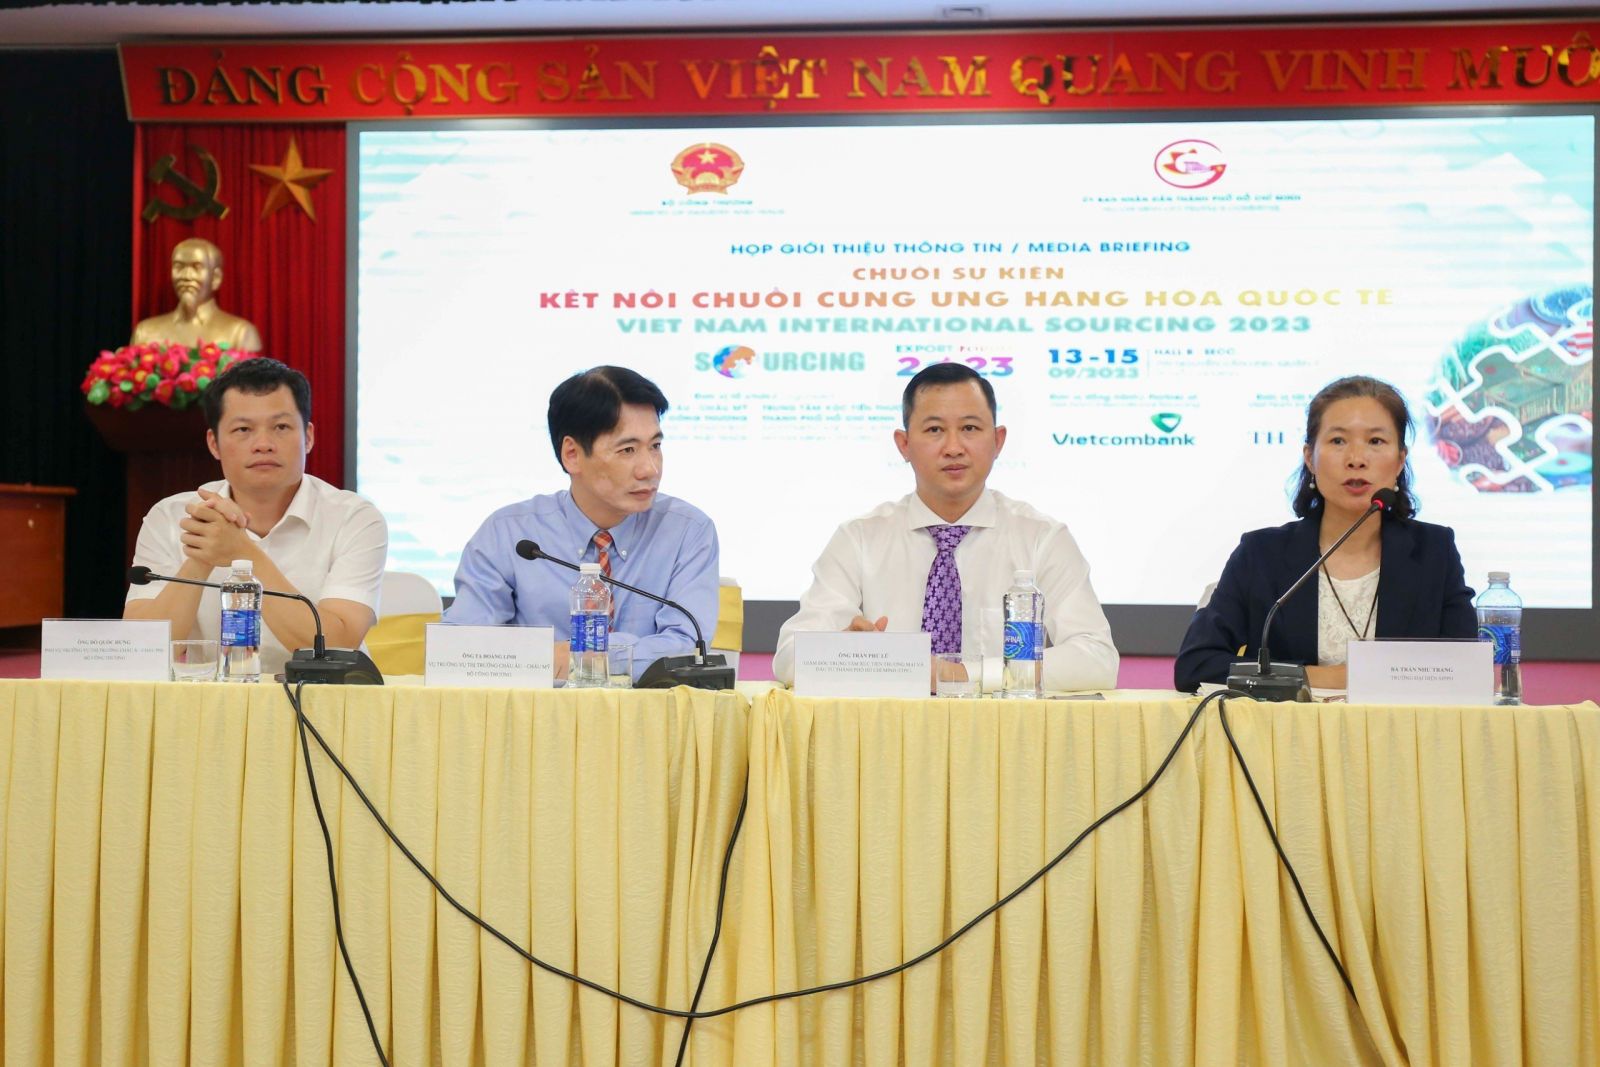 Họp báo giới thiệu thông Chuỗi sự kiện cung ứng hàng hóa quốc tế - Viet Nam International Sourcing 2023 vào ngày 7.9 tại trụ sở Bộ Công Thương. Ảnh: Nguyễn Tuấn